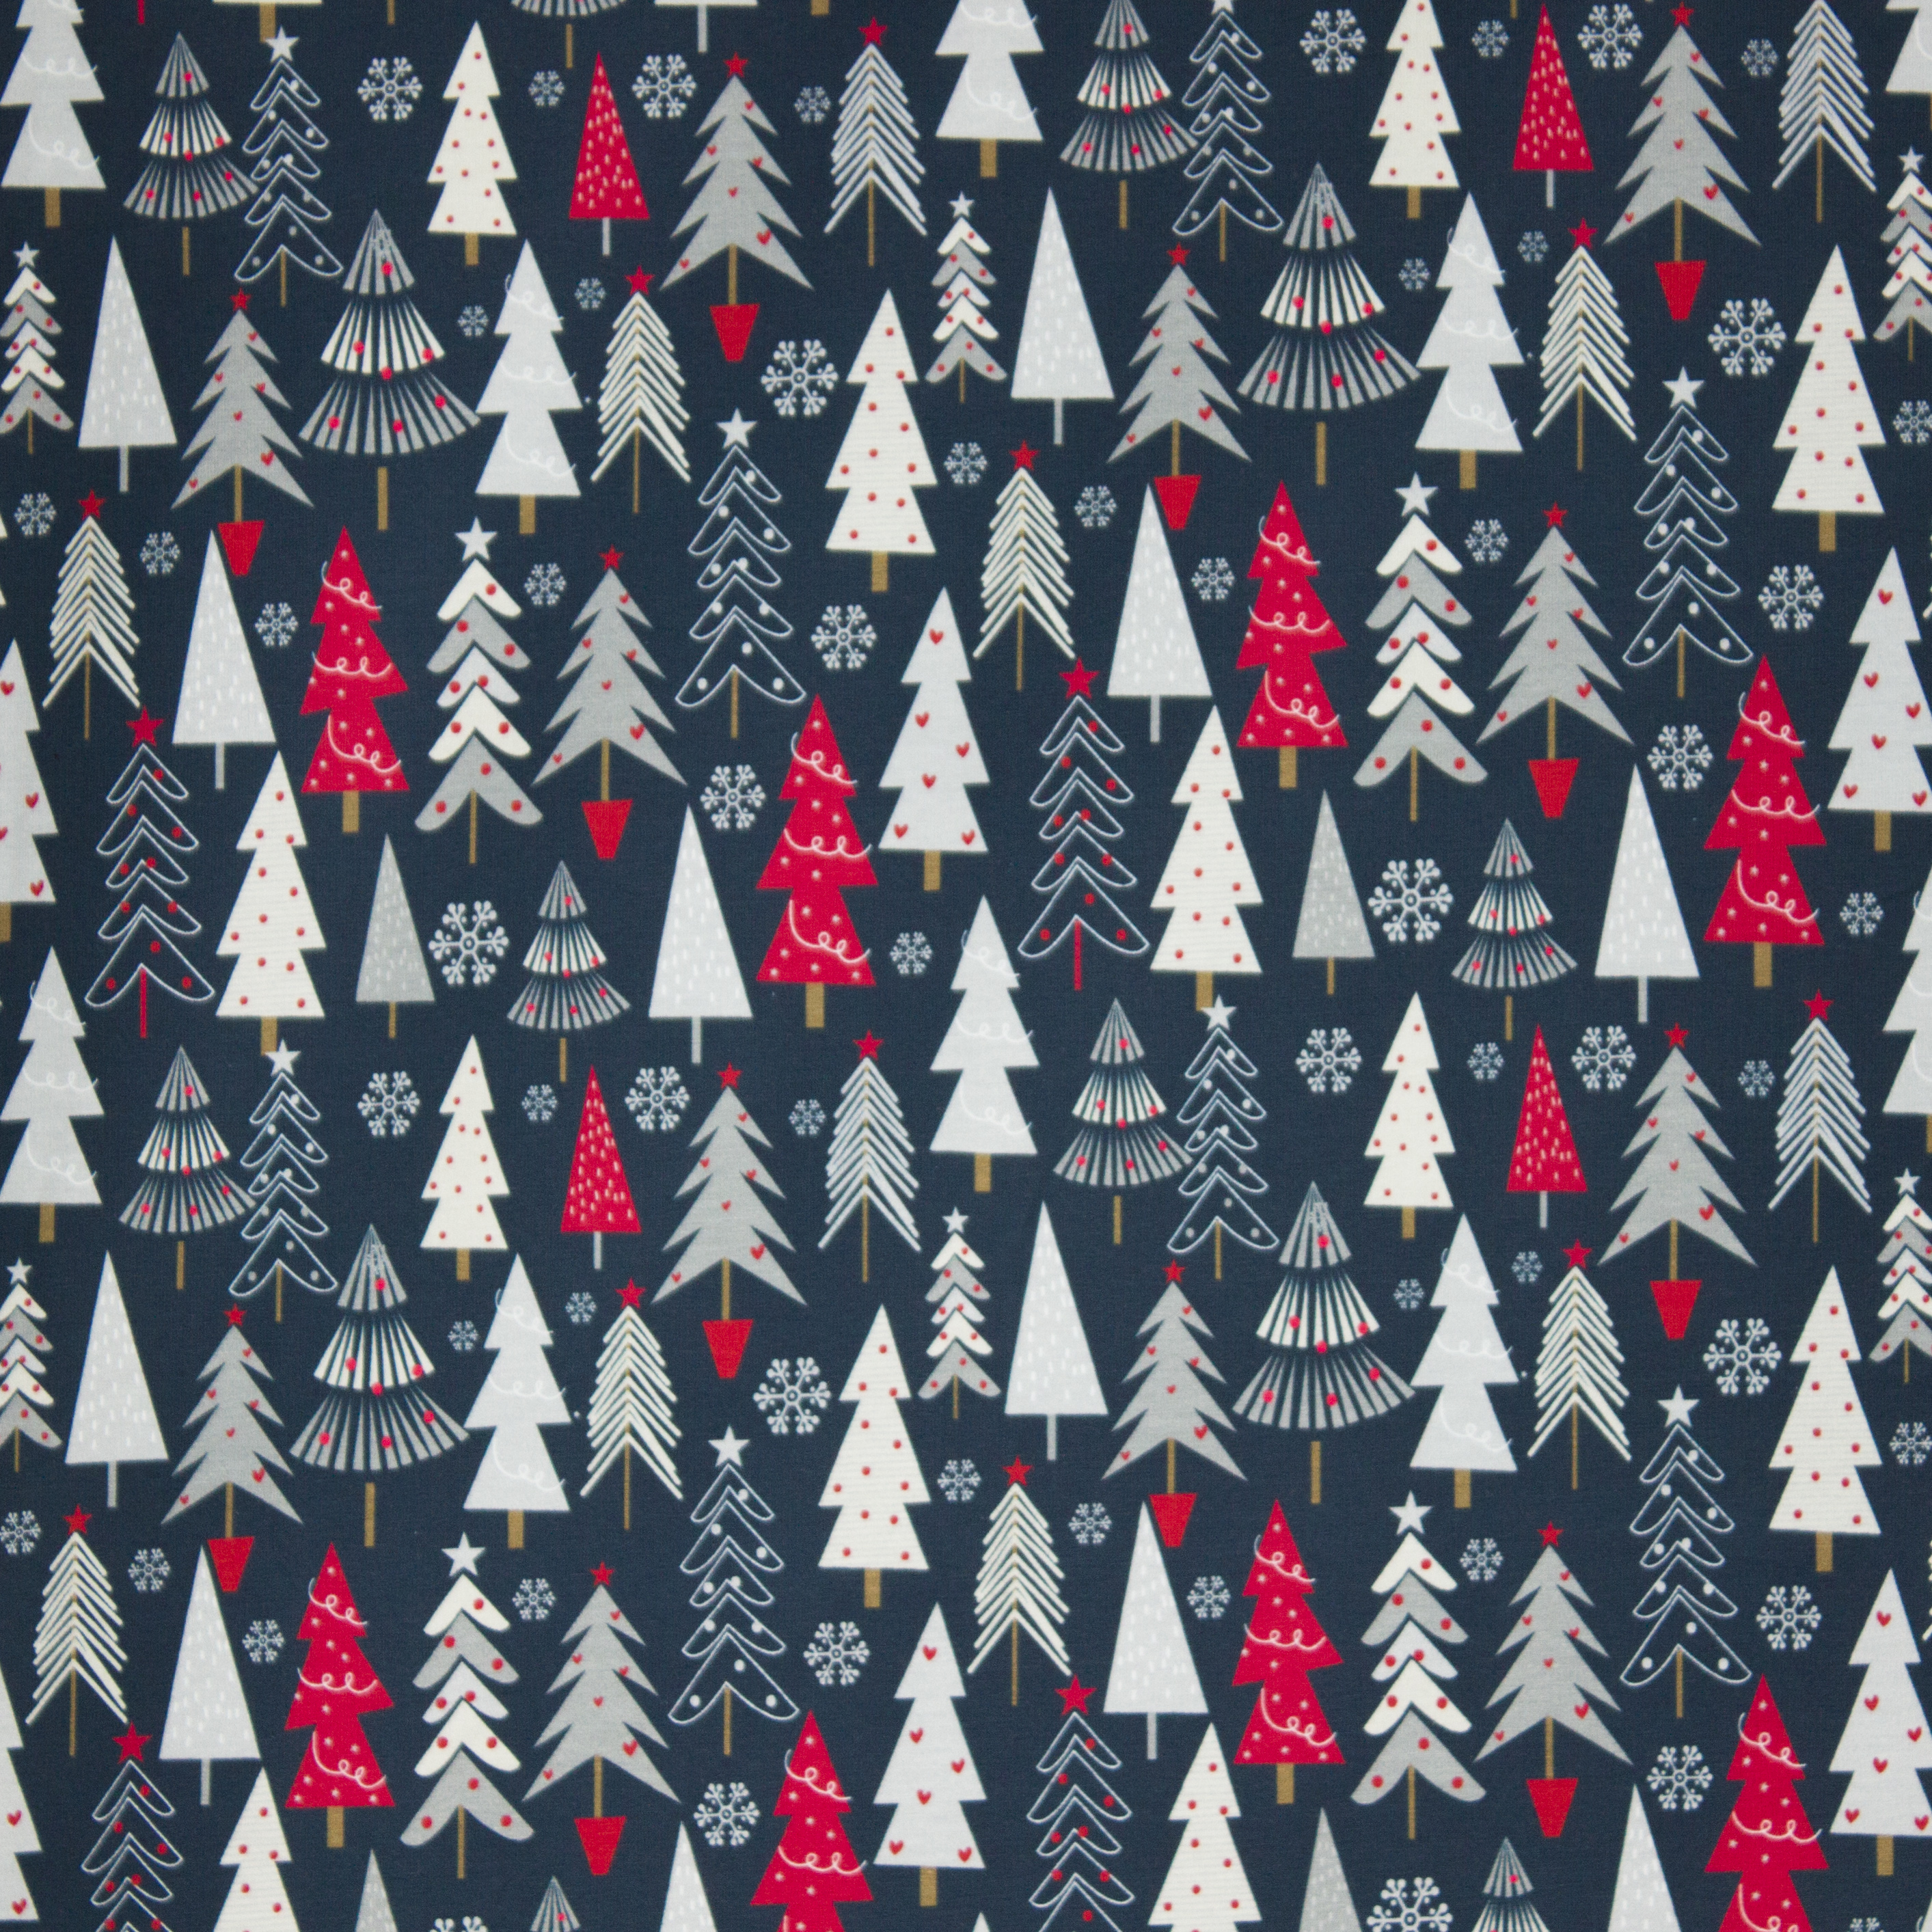 Blauwe tricot met kerstbomen